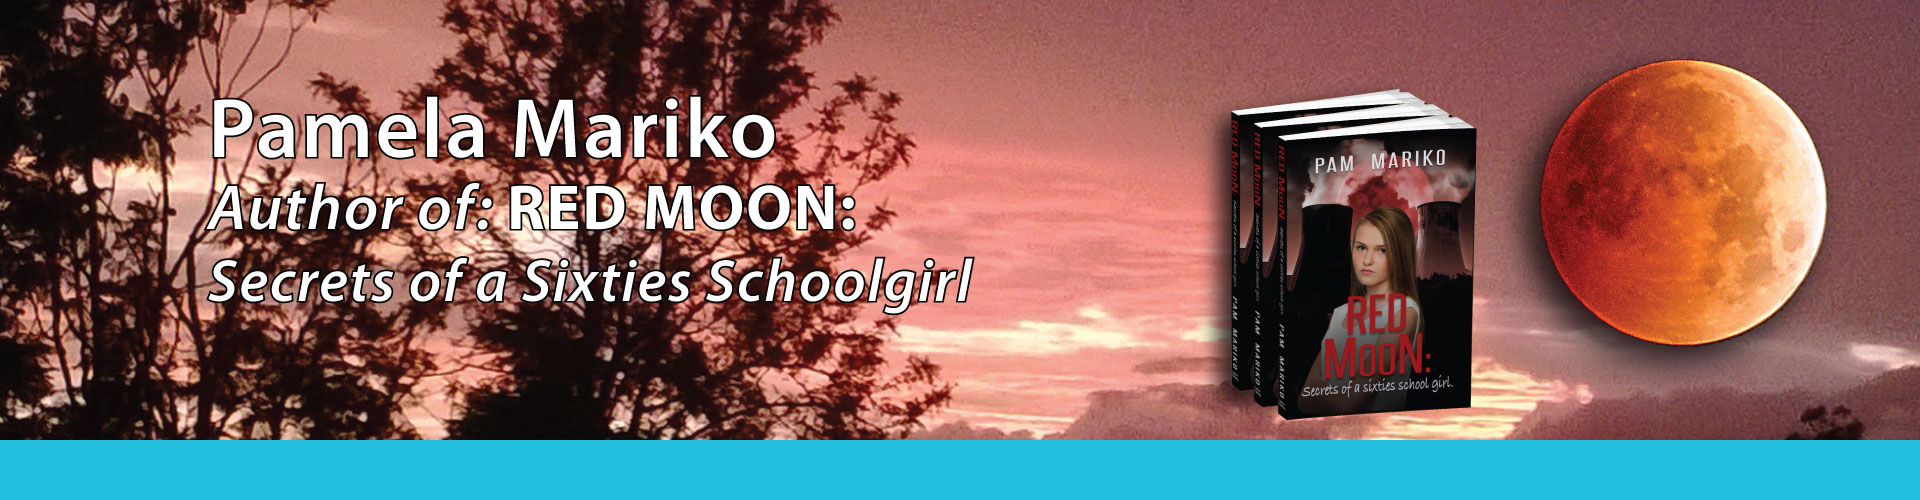 Pamela Mariko author Red Moon: secrets of a sixties schoolgirl feature image